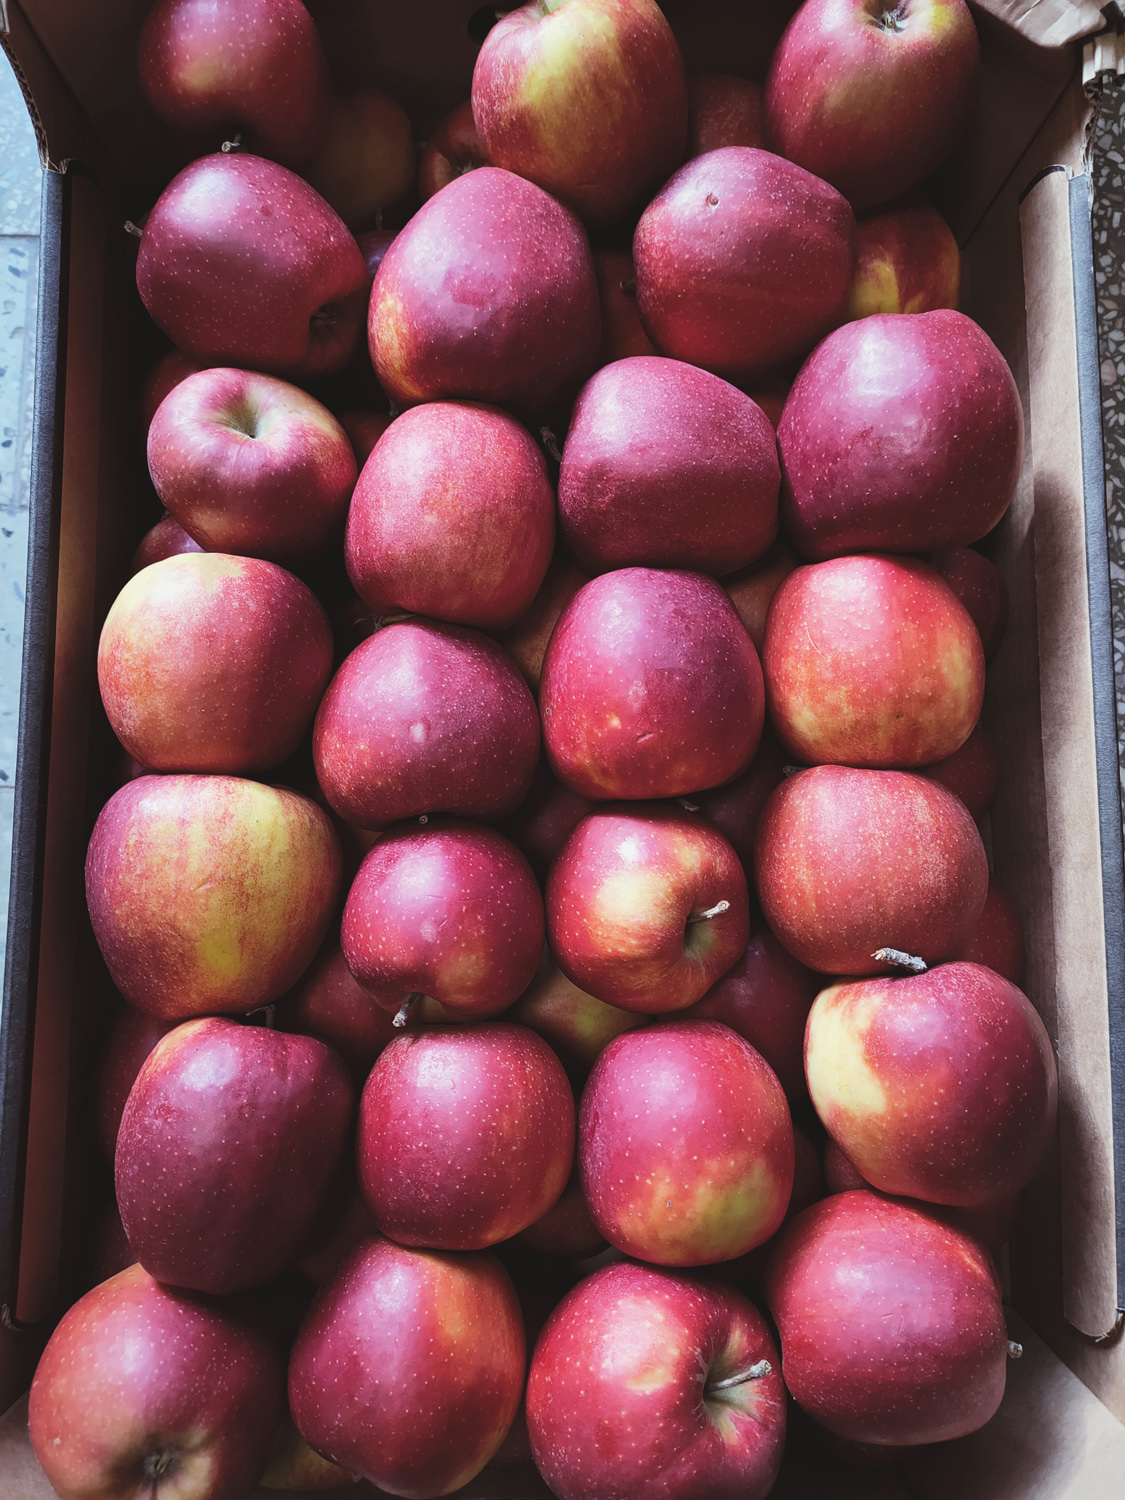 Zdjęcie sprzedawanych jabłek w akcji charytatywnej